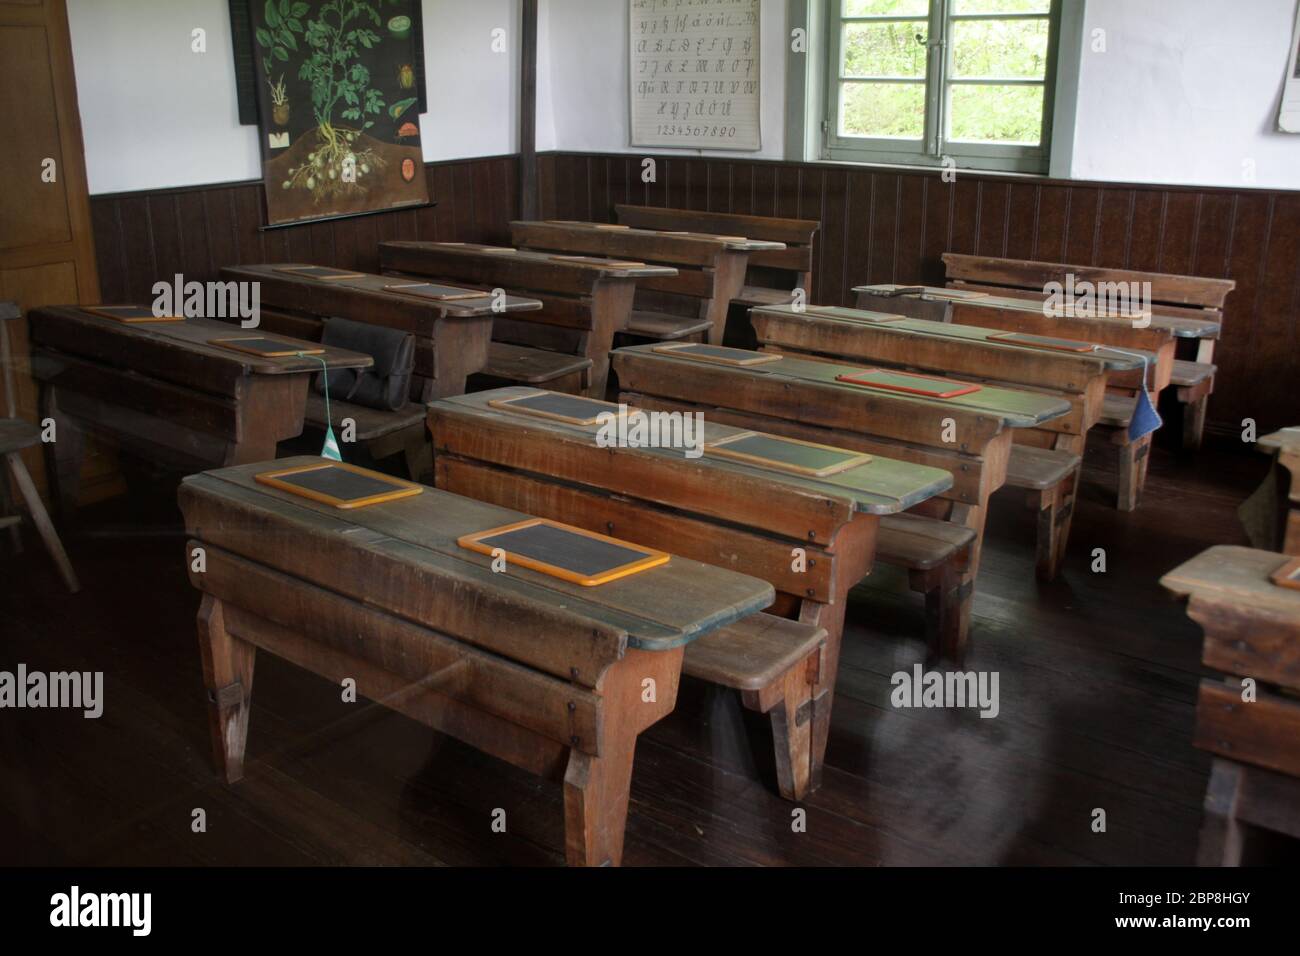 Alte Schulbänke in einem Klassenzimmer Stock Photo